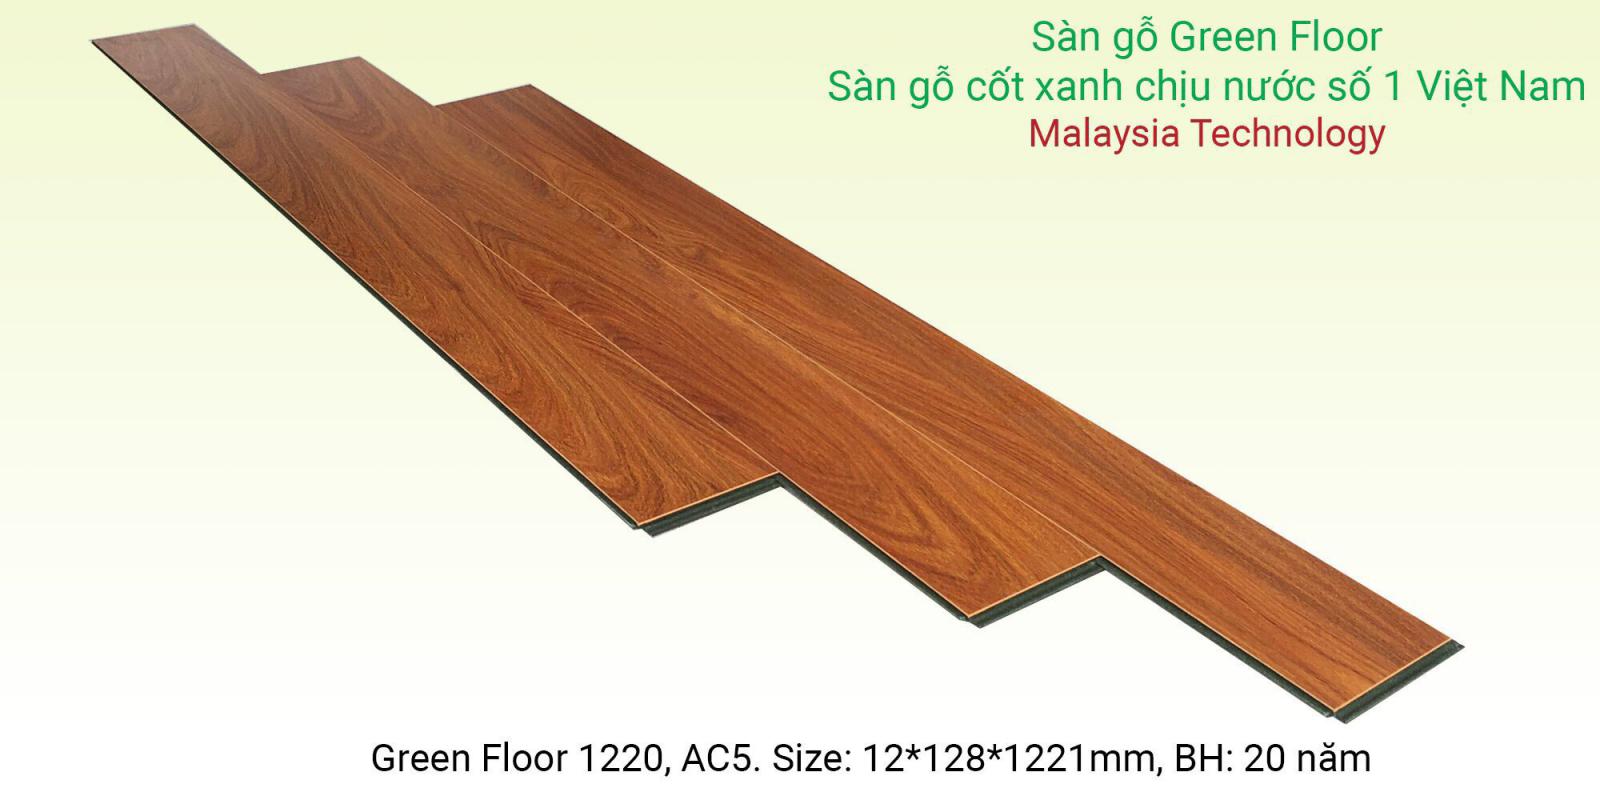 Sàn gỗ Greenfloor 1220